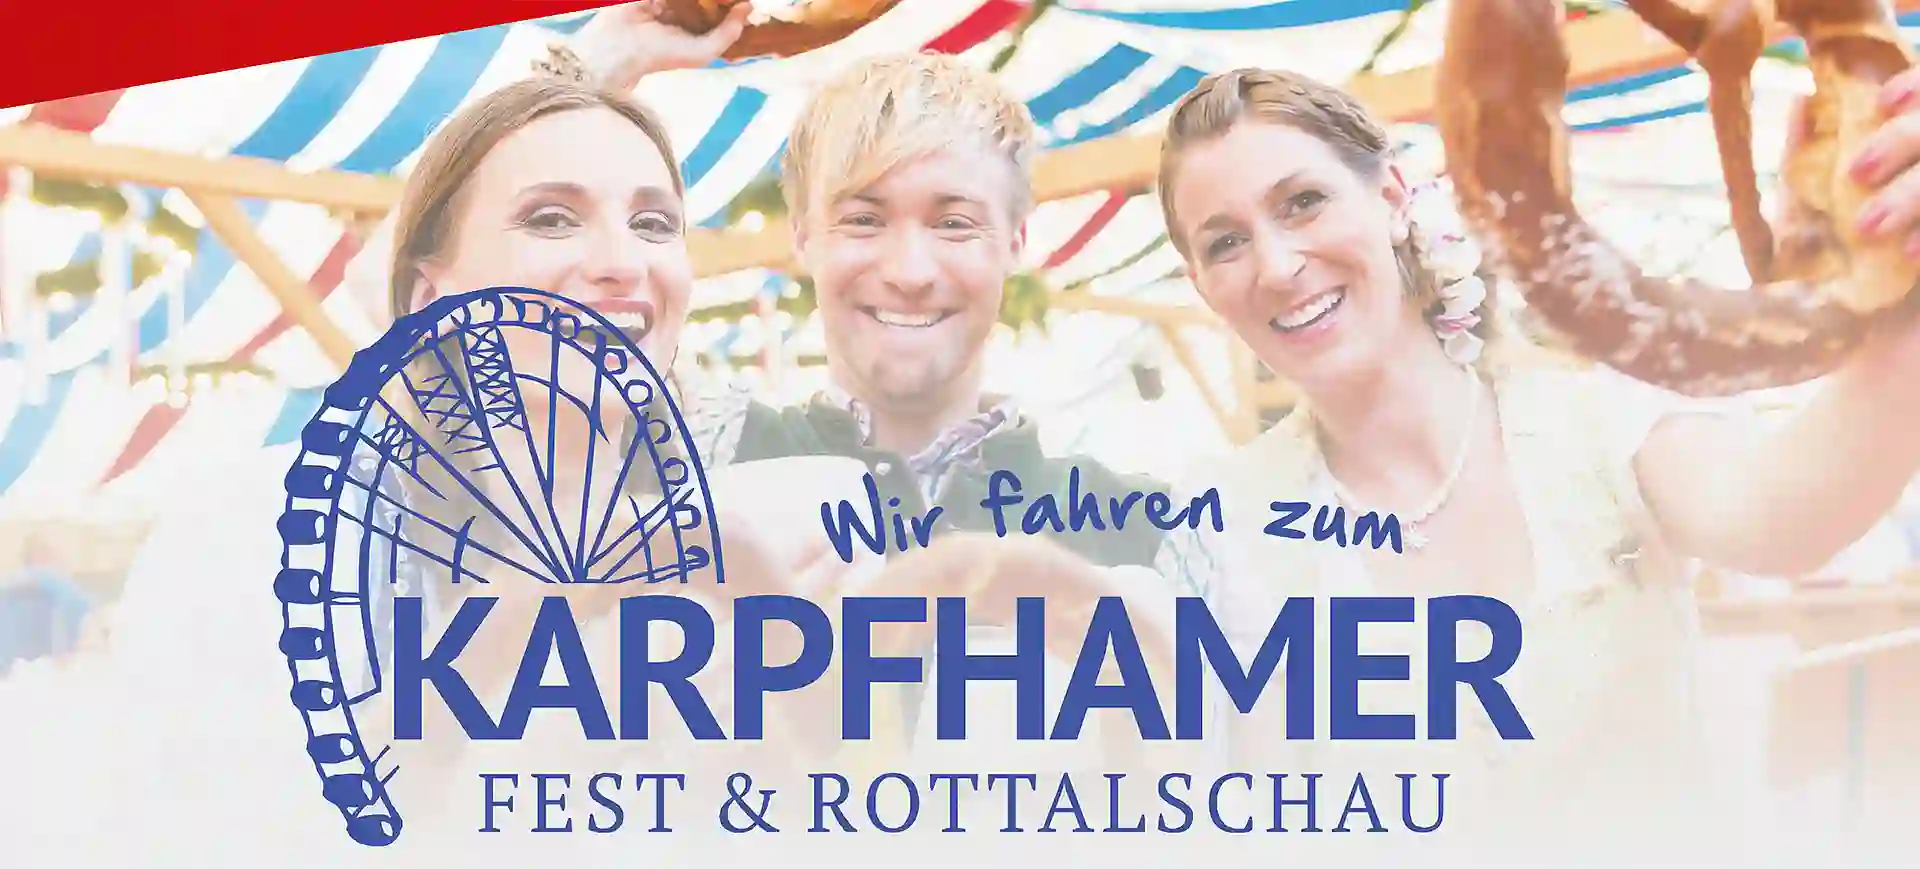 Logo des Karpfhamer Fests 2019